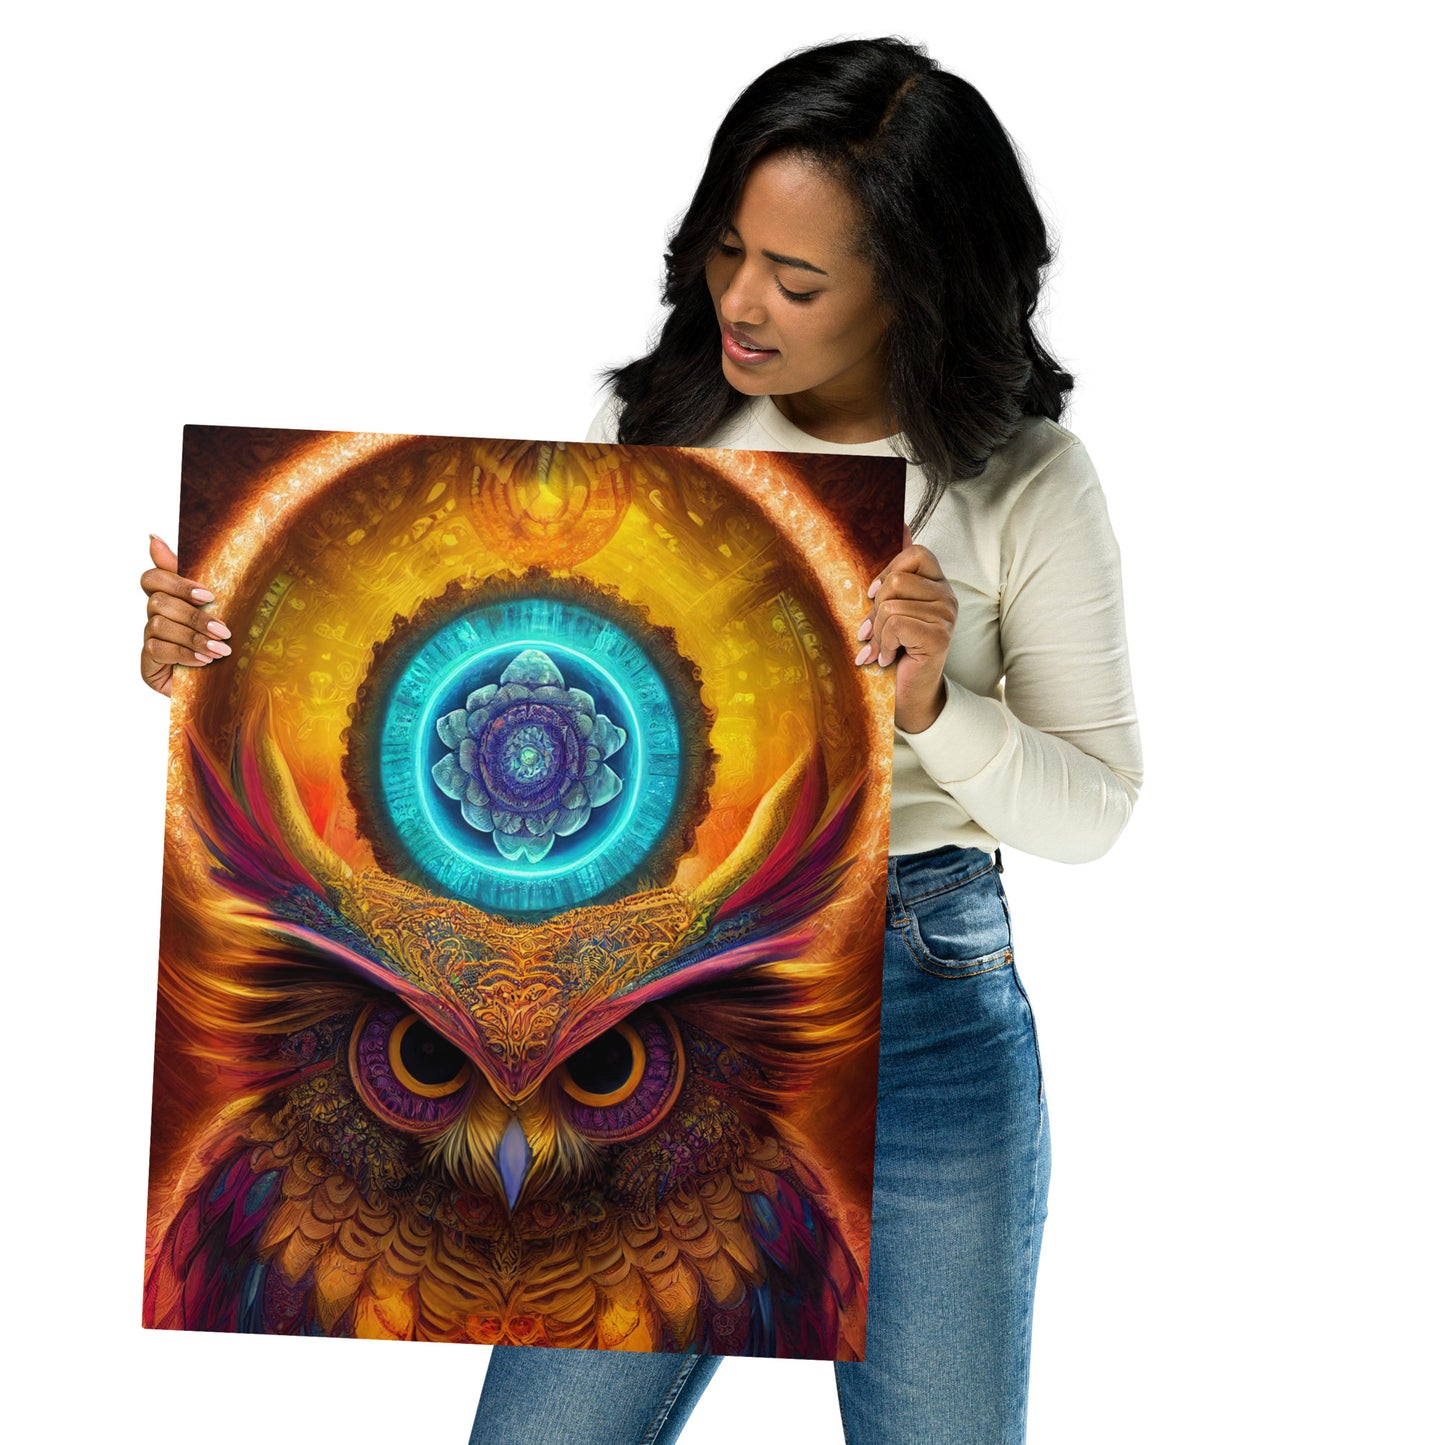 Mandala Owl 1.0 Metal Print Wall Art